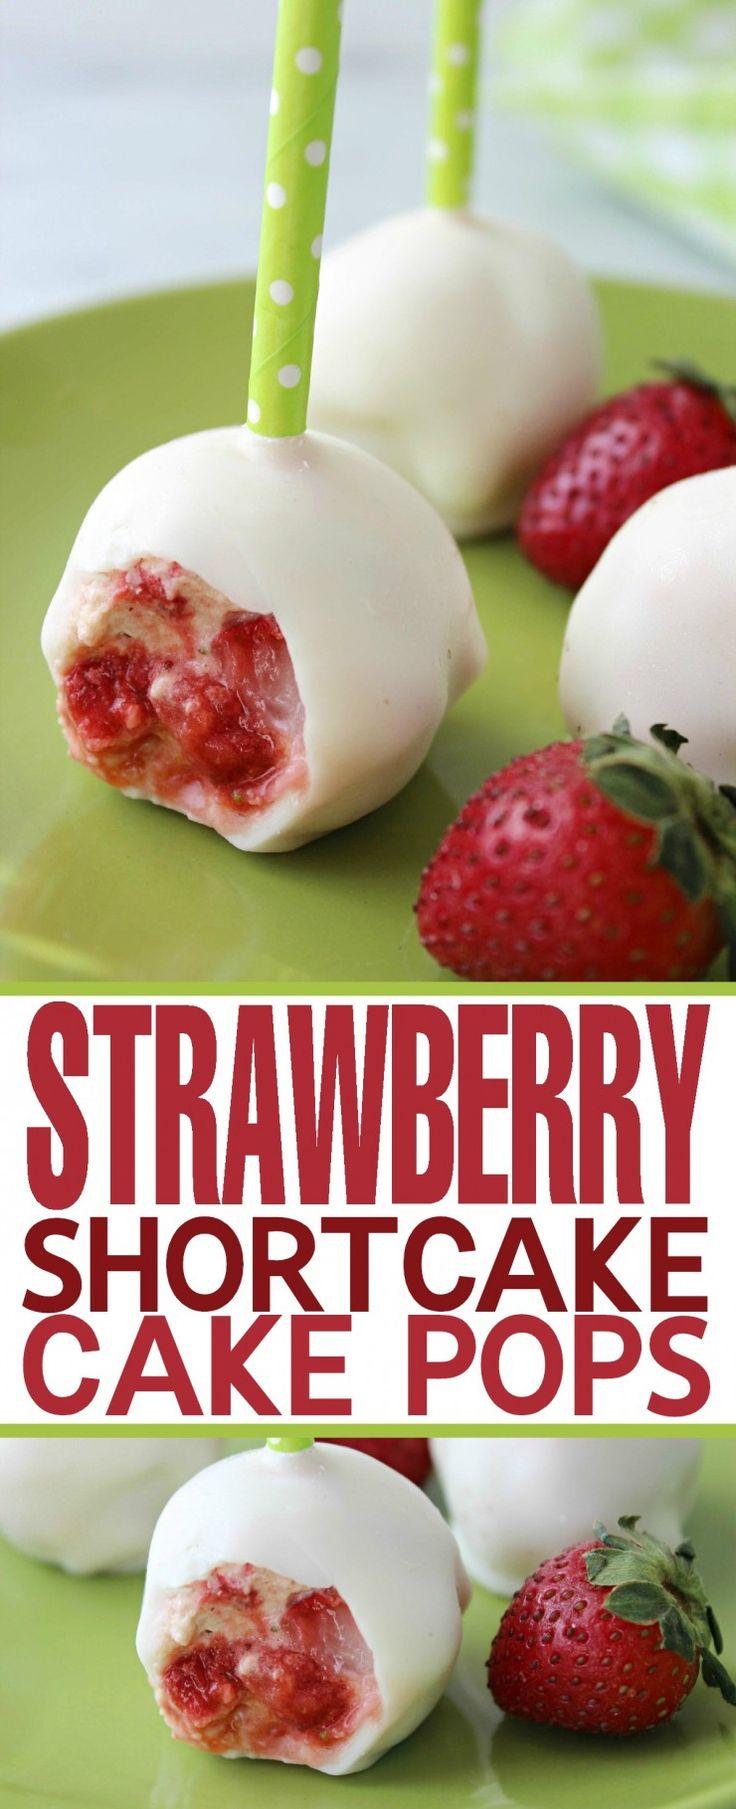 Wedding - Strawberry Shortcake Cake Pops